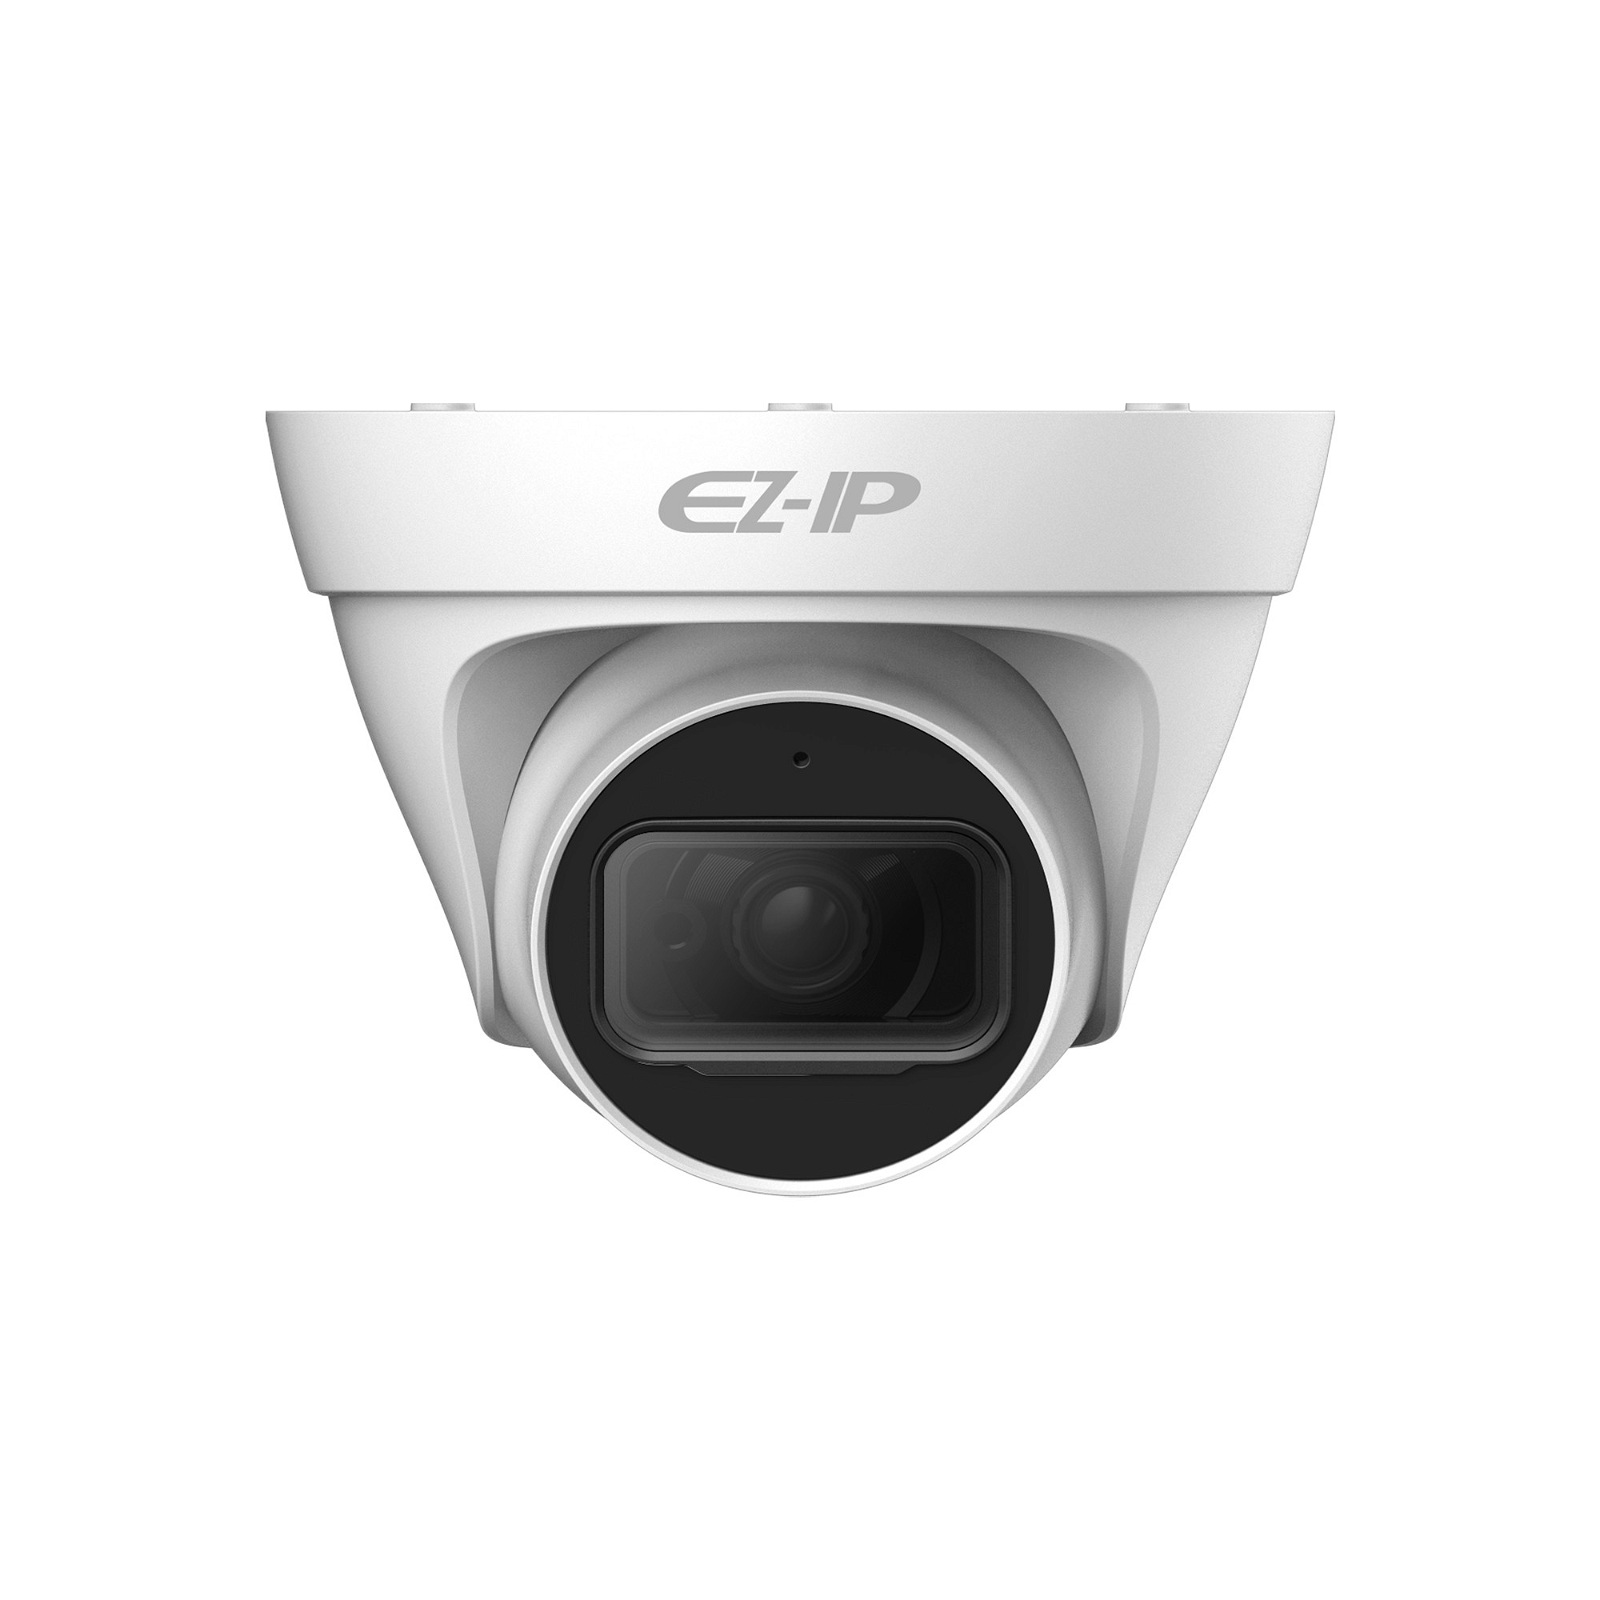 Kamera IP Dahua EZ-IP IPC-T1B40P-0360B 4Mpx, 3.6mm, PoE